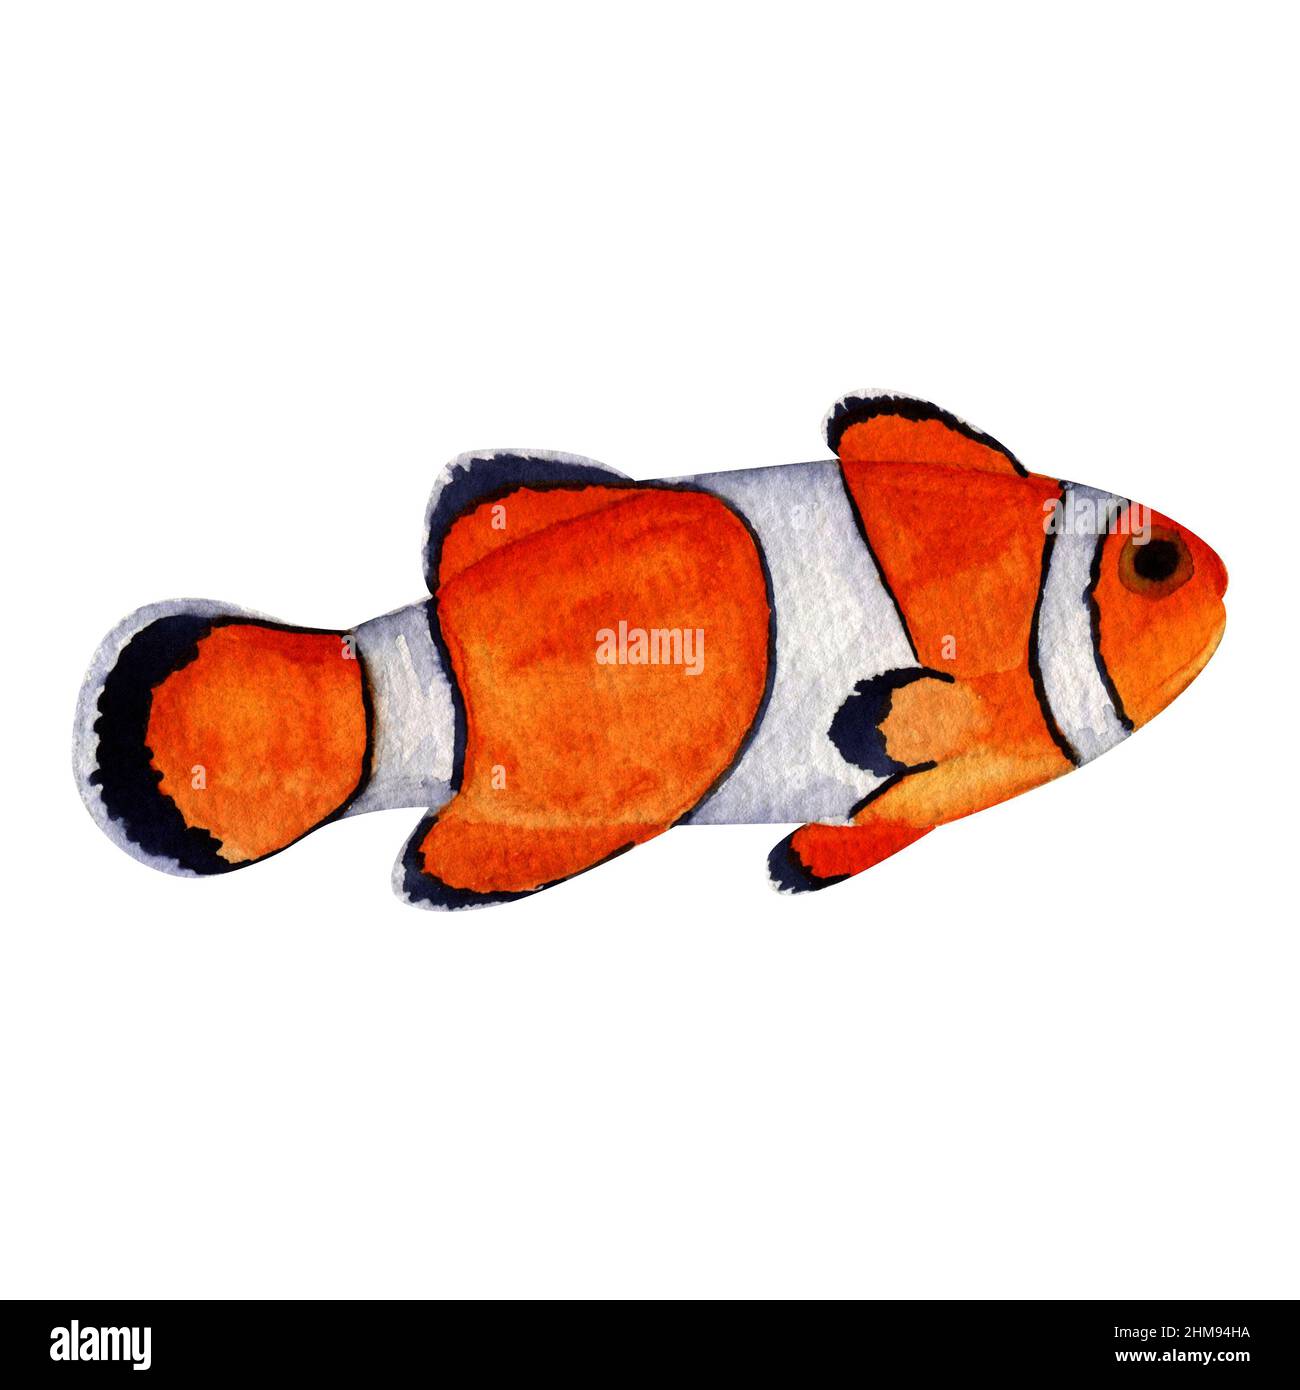 Acquerello pesce pagliaccio su sfondo bianco, illustrazione della vita marina, pittura di pesce oceano, immagine di pesce arancio, pesce pagliaccio dipinto a mano, immagine di pesce di Auarium Foto Stock